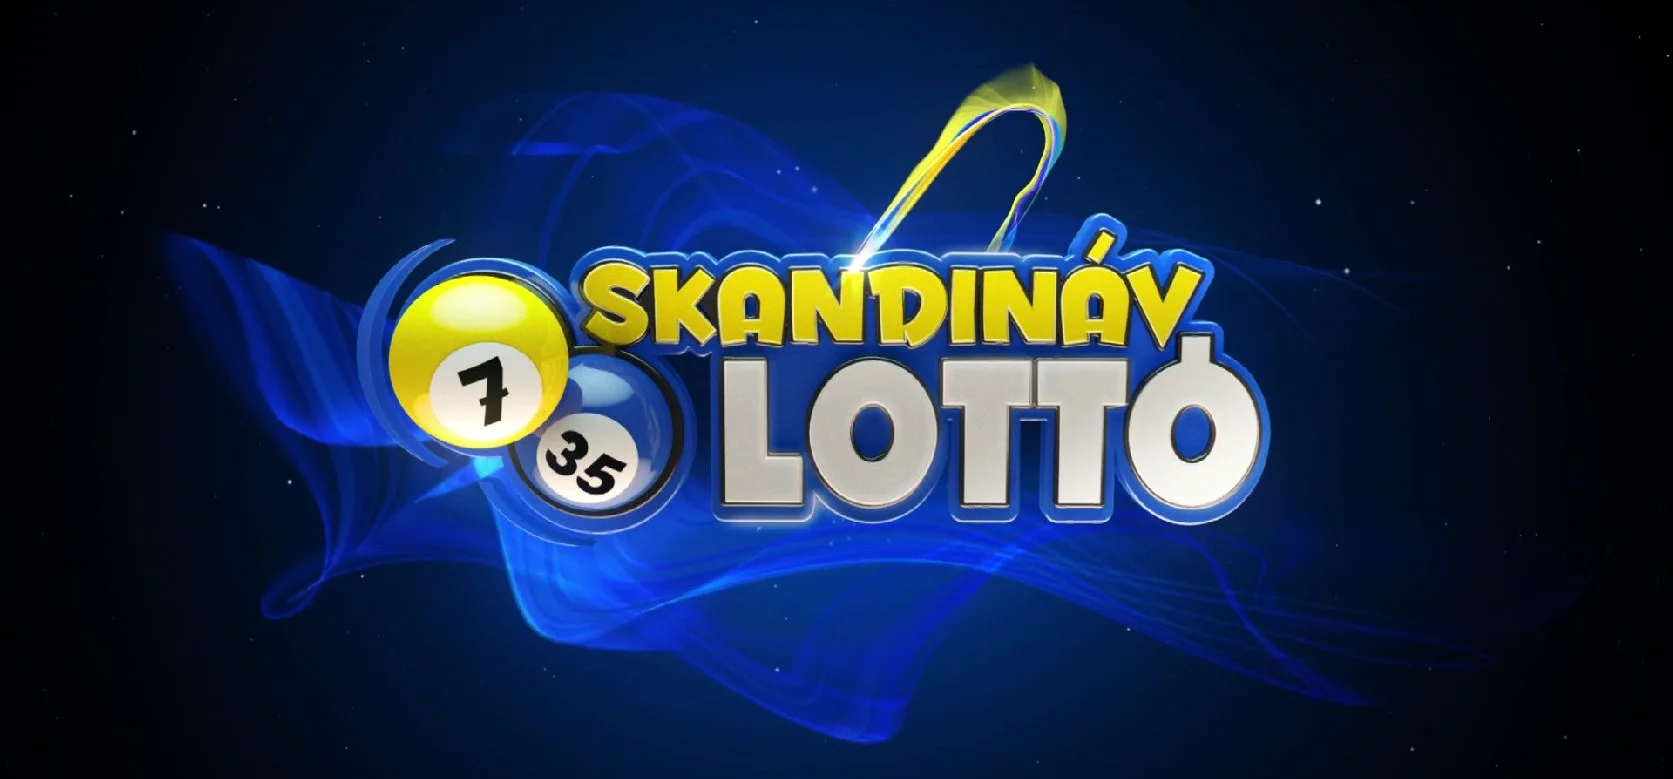 Skandináv lottó: megvolt a 14. heti sorsolás, már mondjuk is, hogy volt-e telitalálat